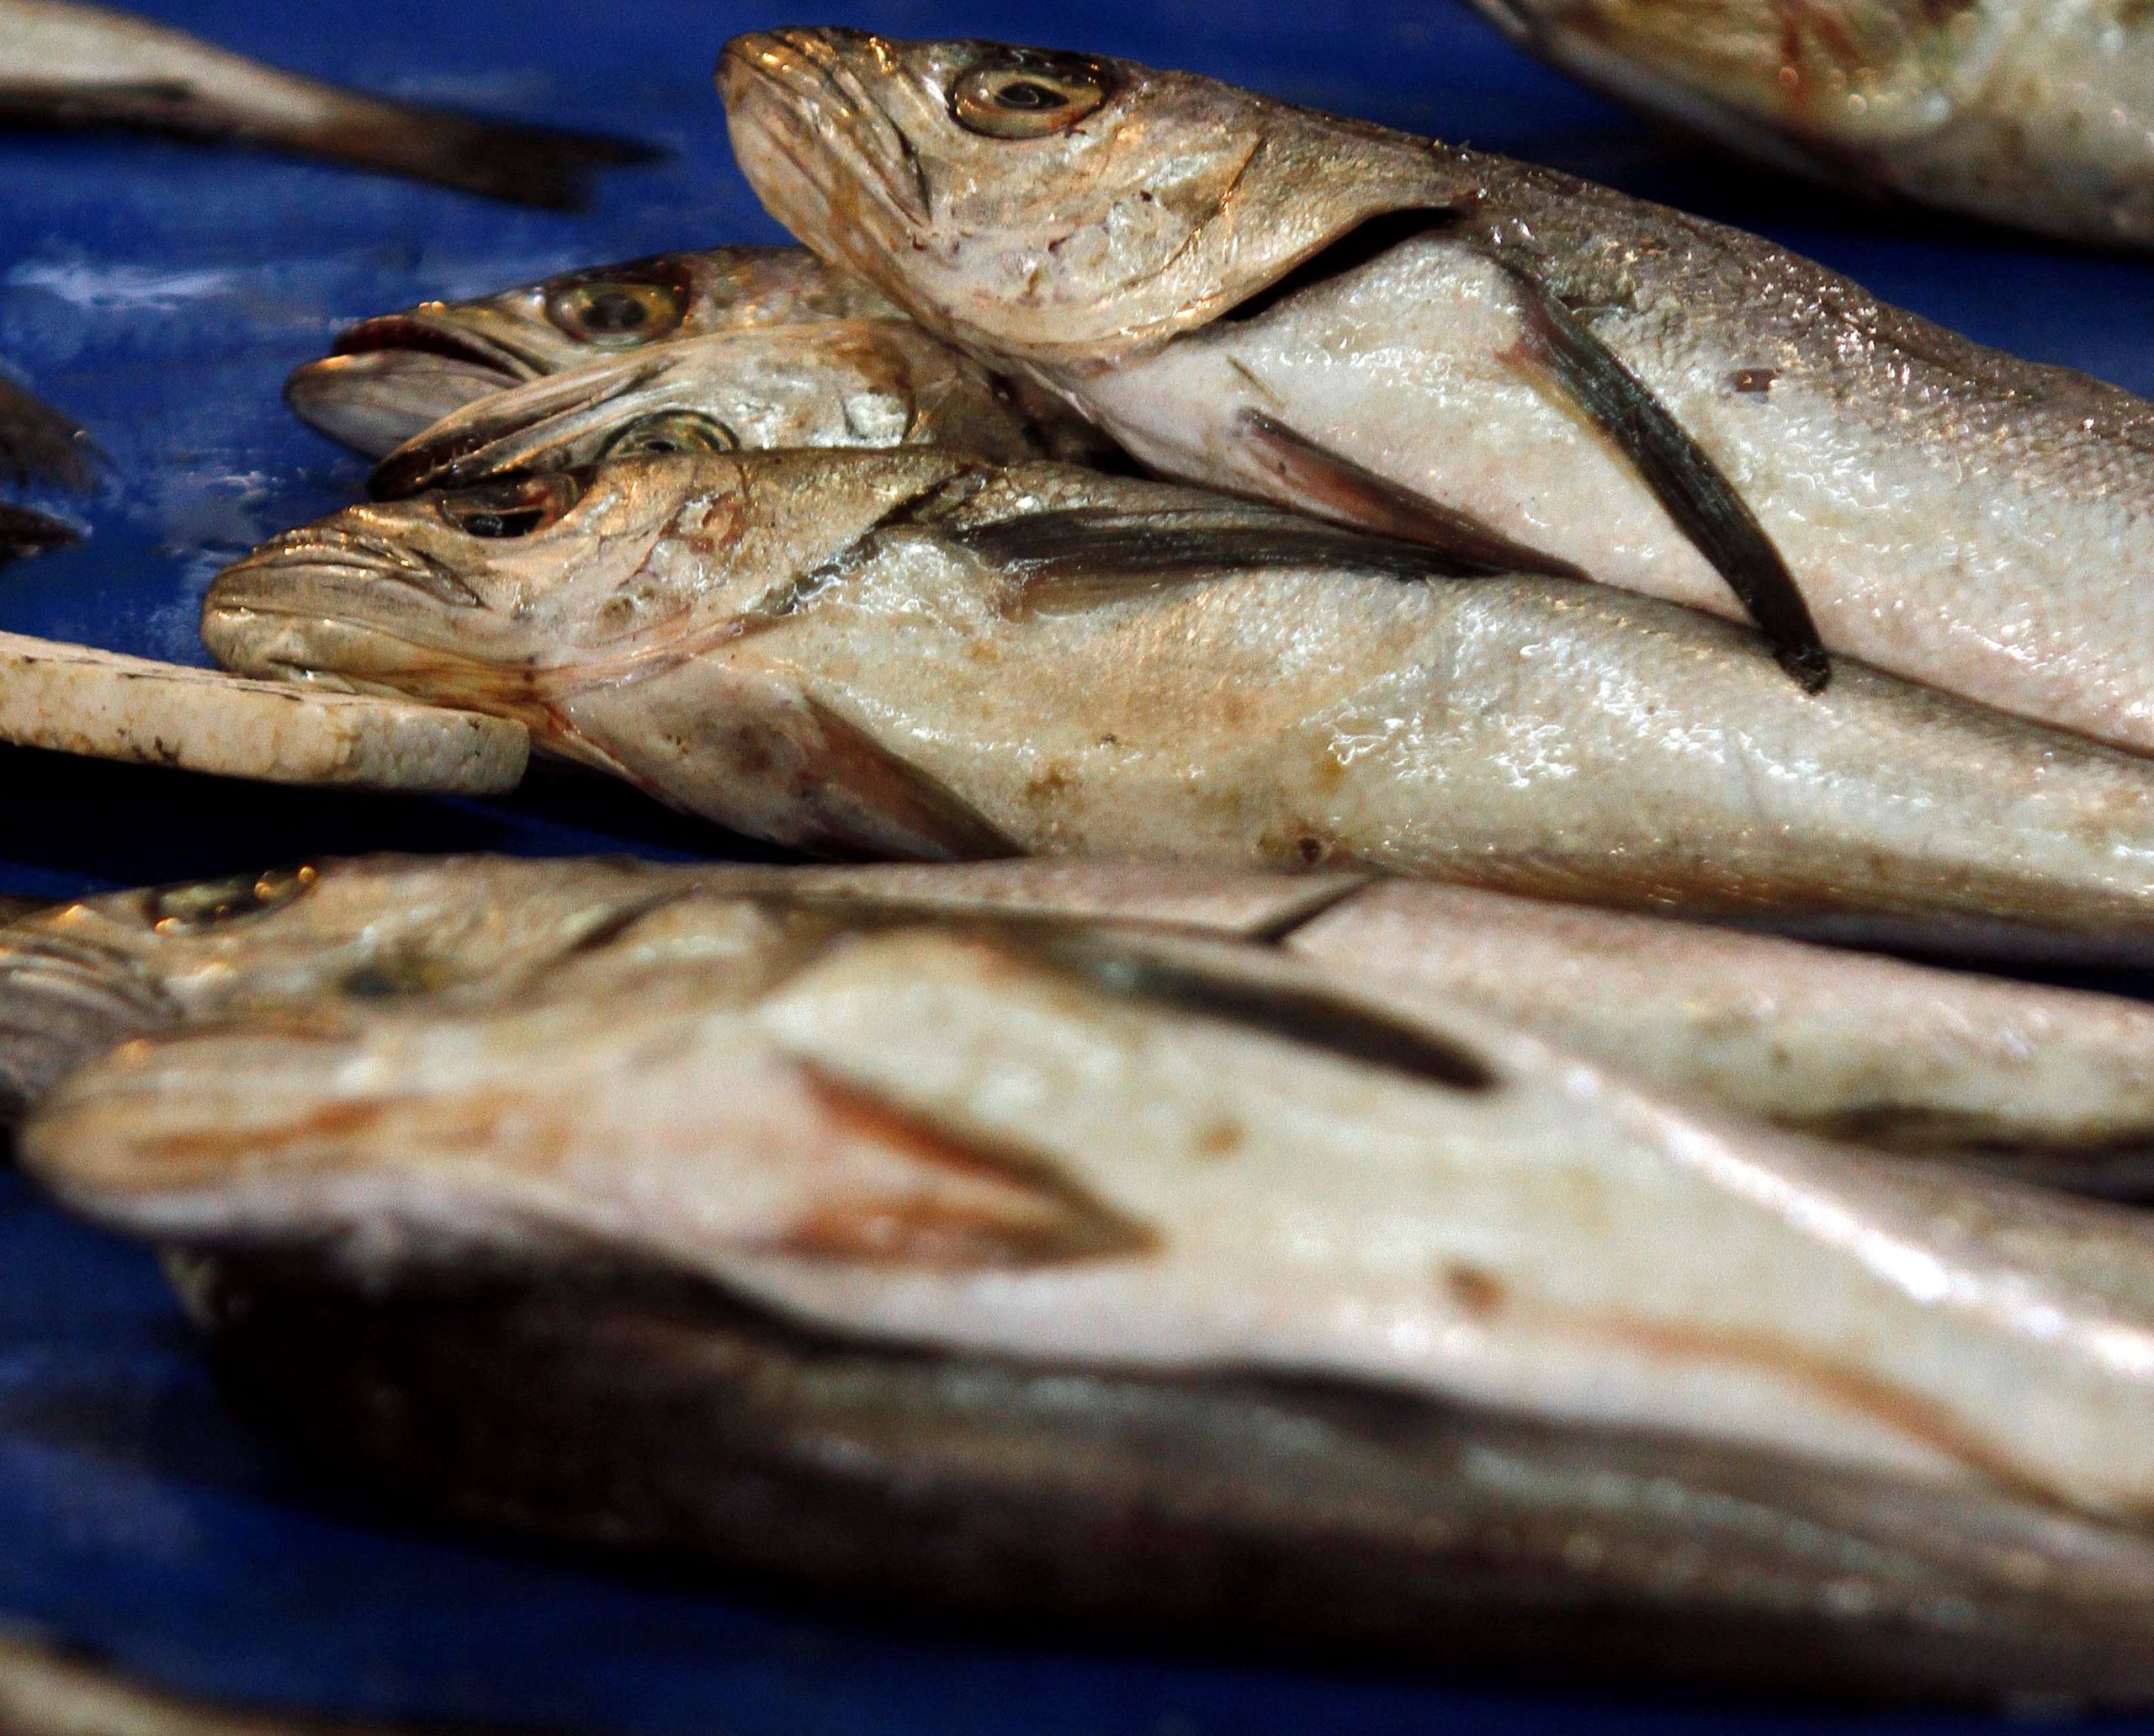 Pescadores Industriales del Biobío llaman a respetar veda de la merluza y denunciar venta ilegal